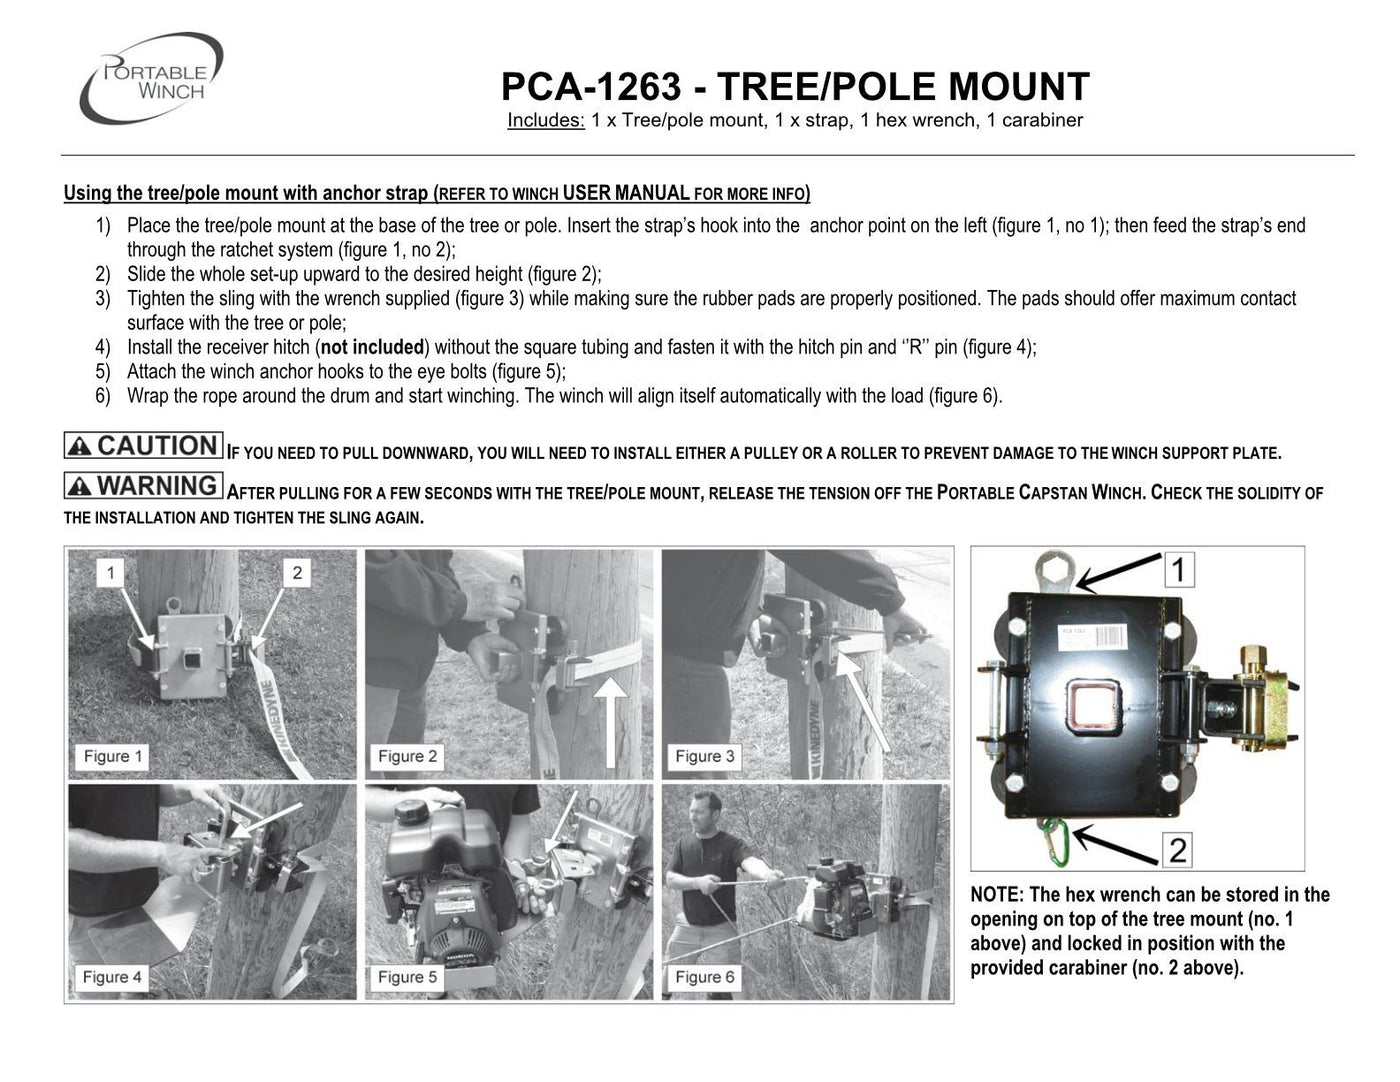 PCA-1263 - SYSTÈME D'ANCRAGE POUR ARBRES ET POTEAUX AVEC RONDELLES DE CAOUTCHOUC